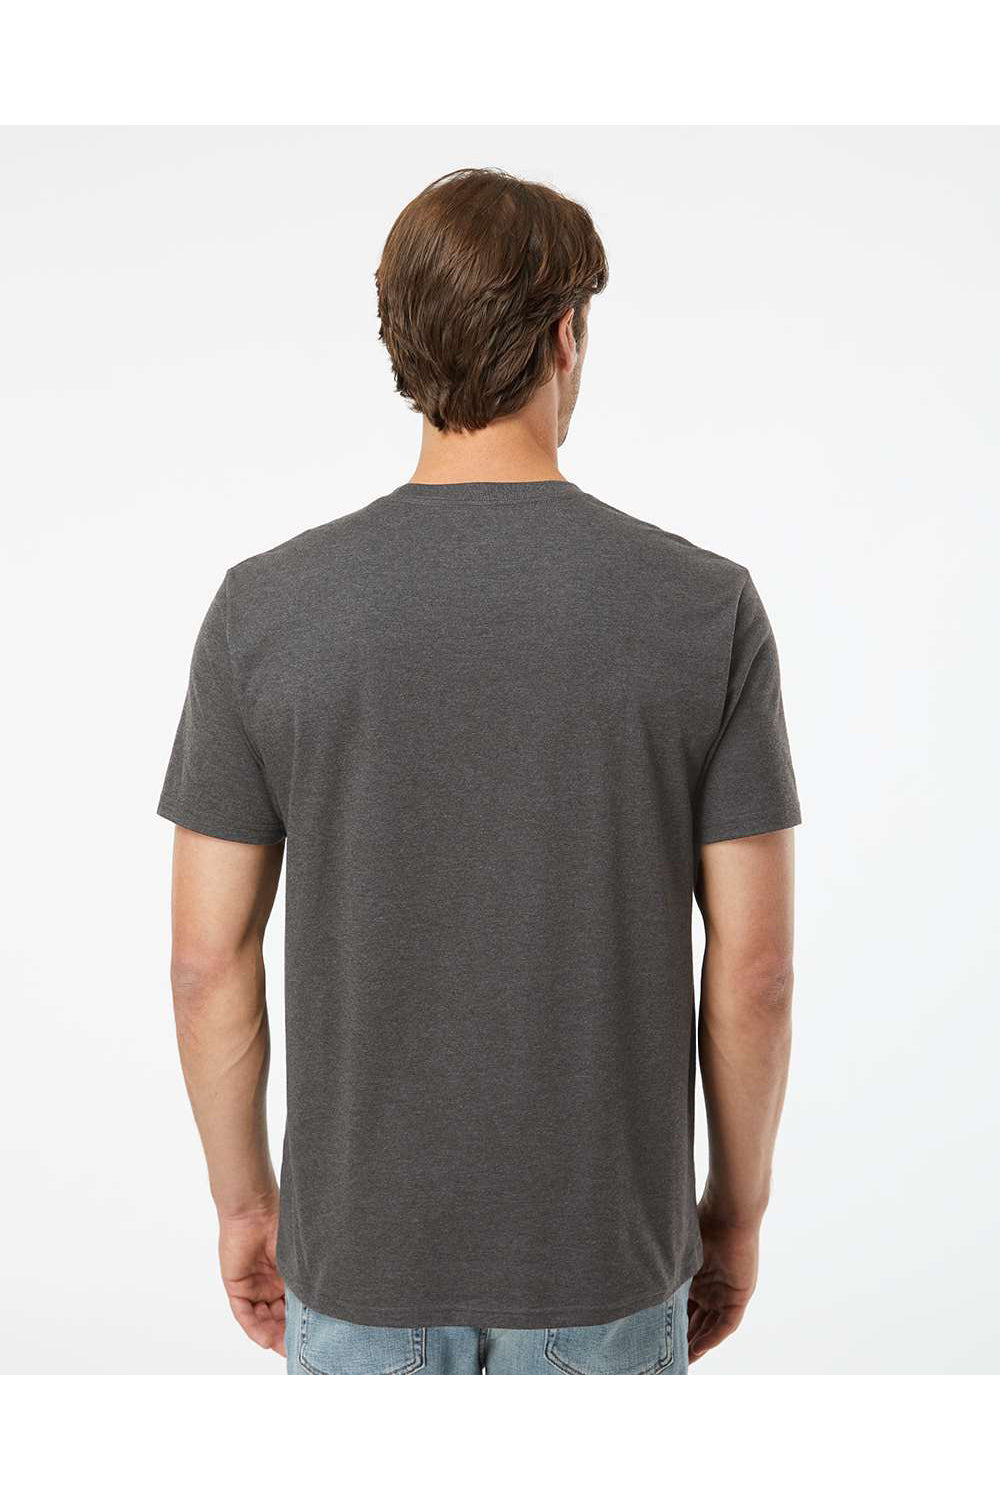 Kastlfel 2010 Mens RecycledSoft Short Sleve Crewneck T-Shirt Carbon Grey Model Back